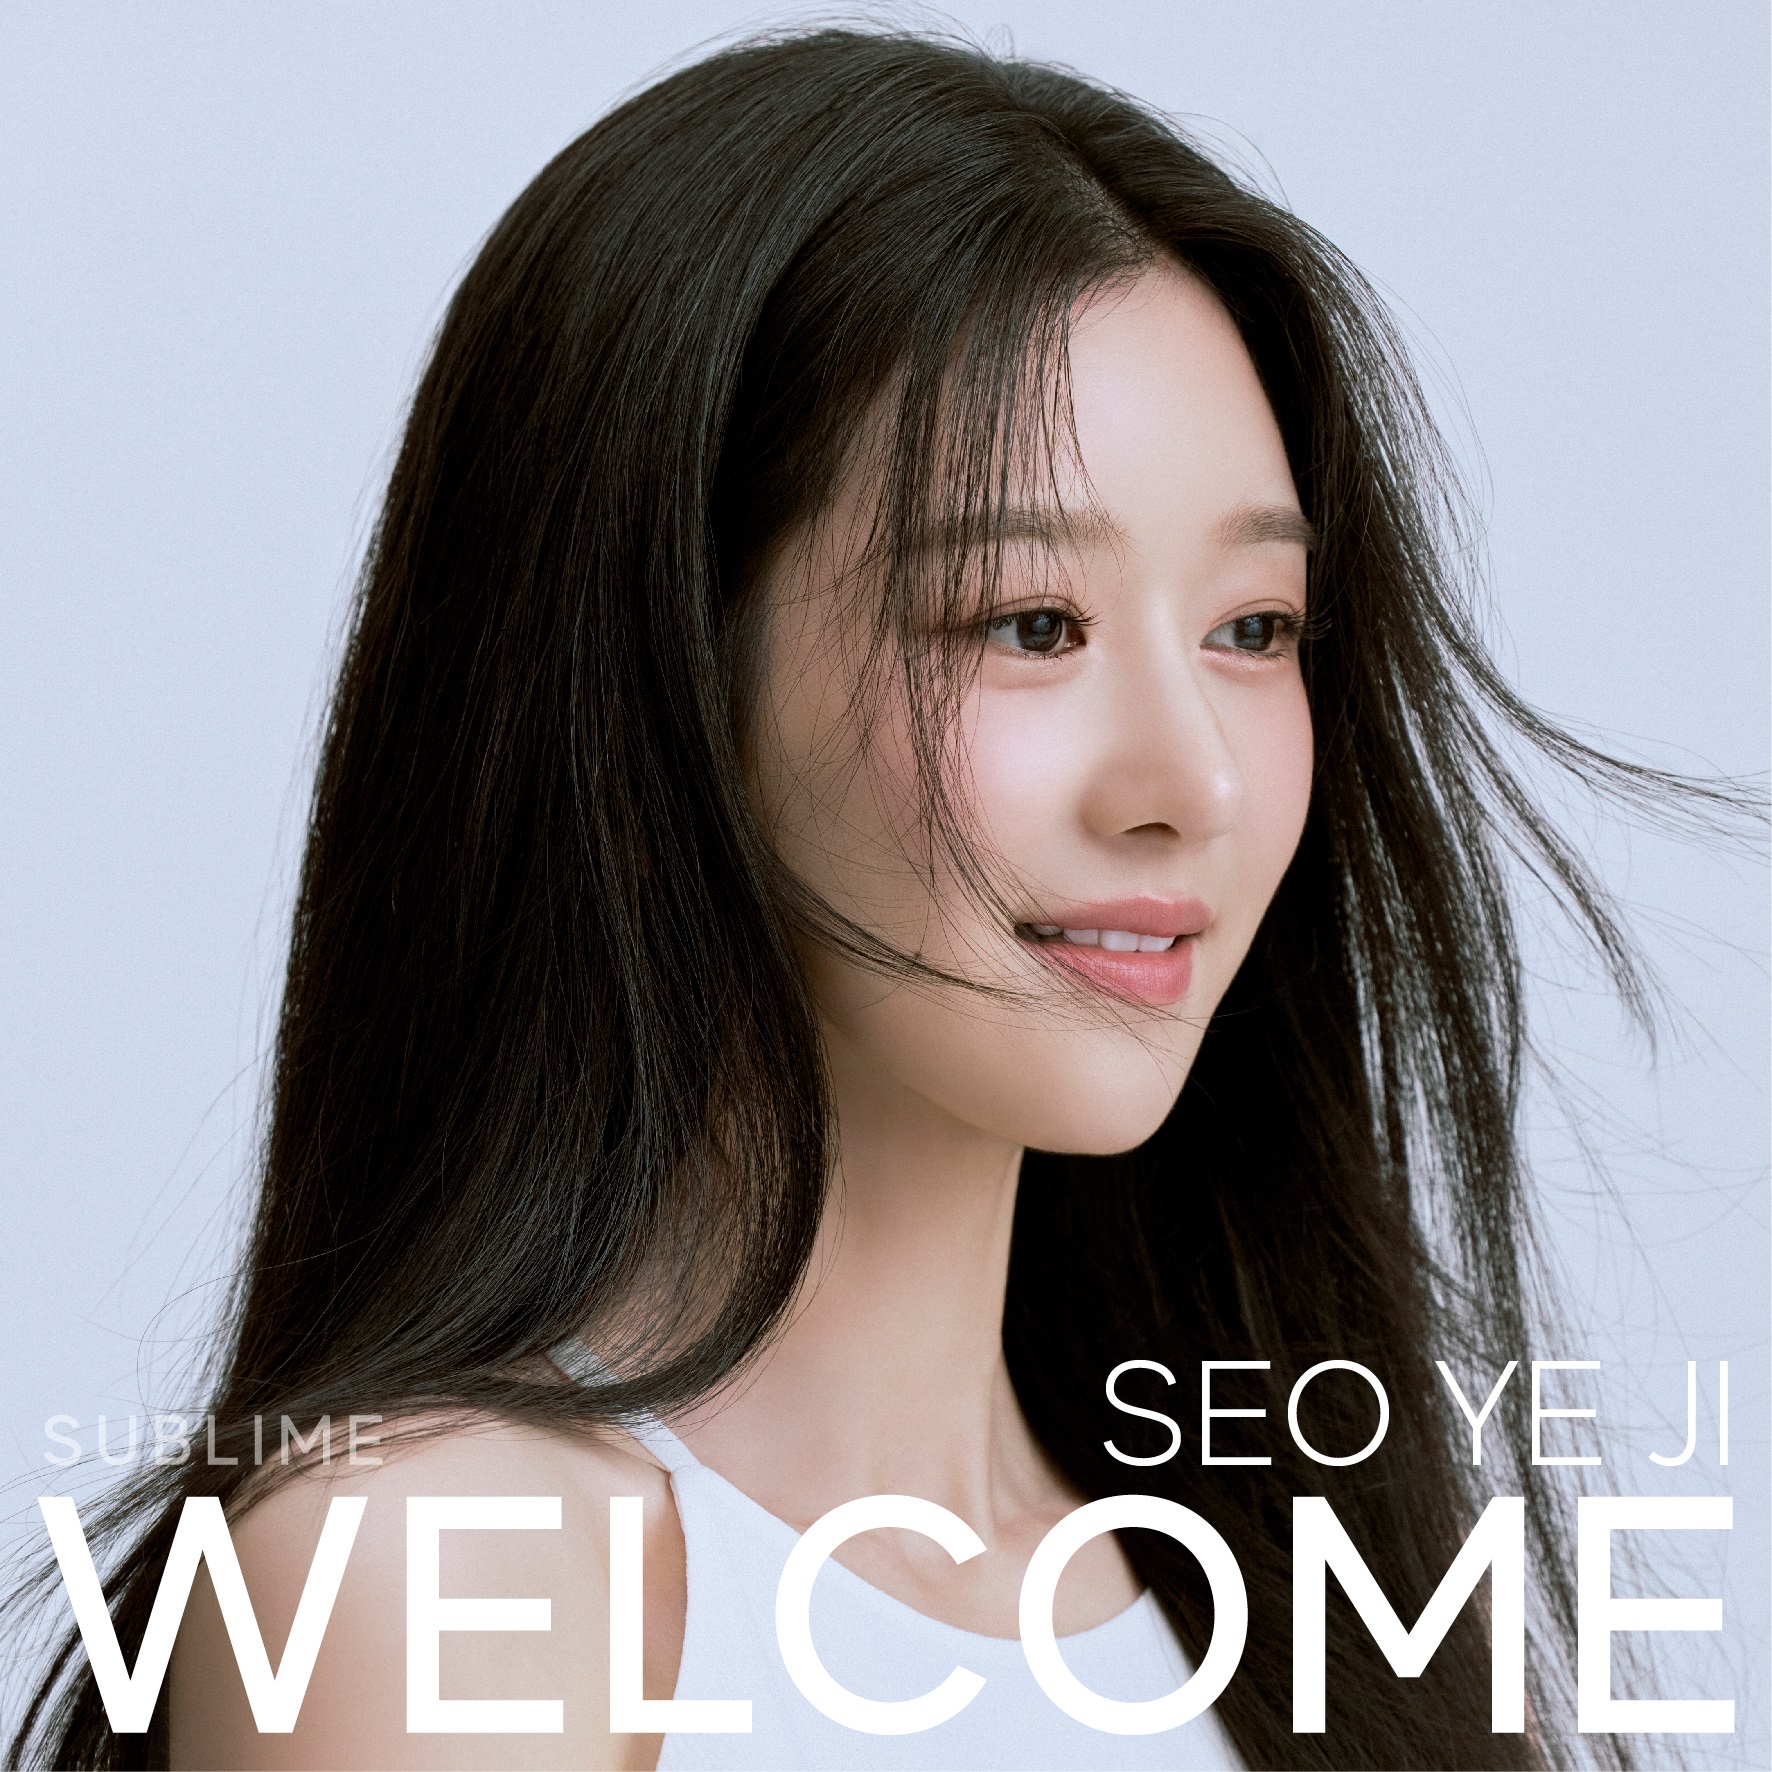 Ảnh profile của Seo Ye Ji (Ảnh: Internet)